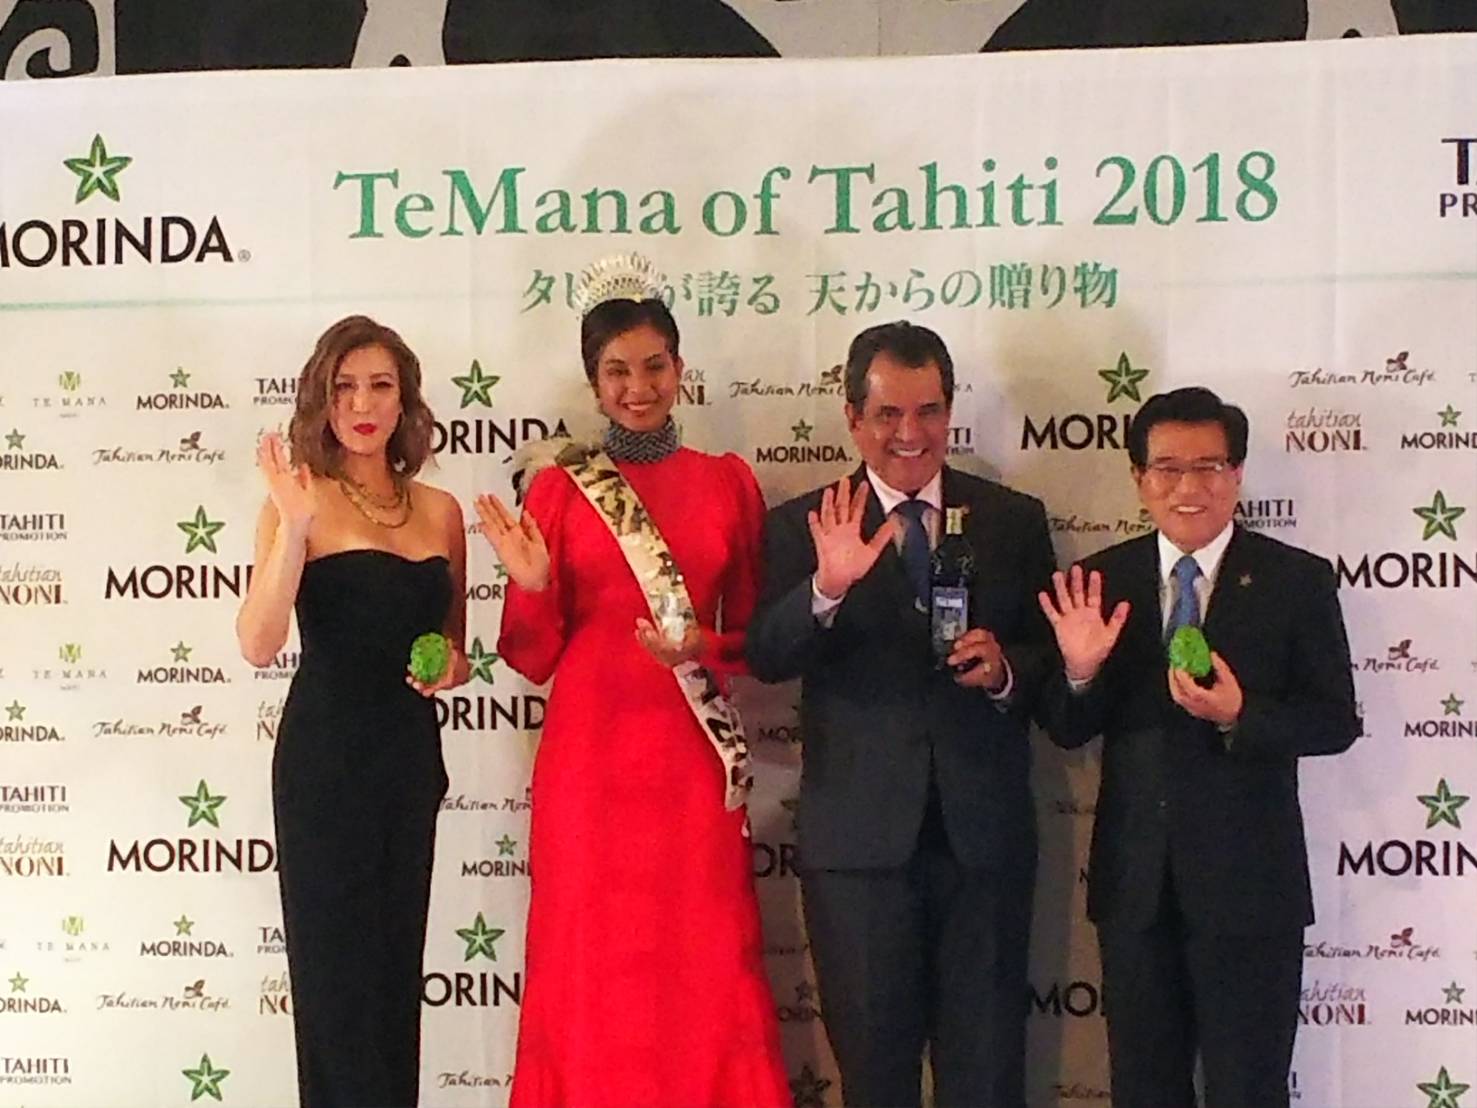 【話題の情報サイト『OVO』にて、「TeMana of Tahiti 2018」掲載中】